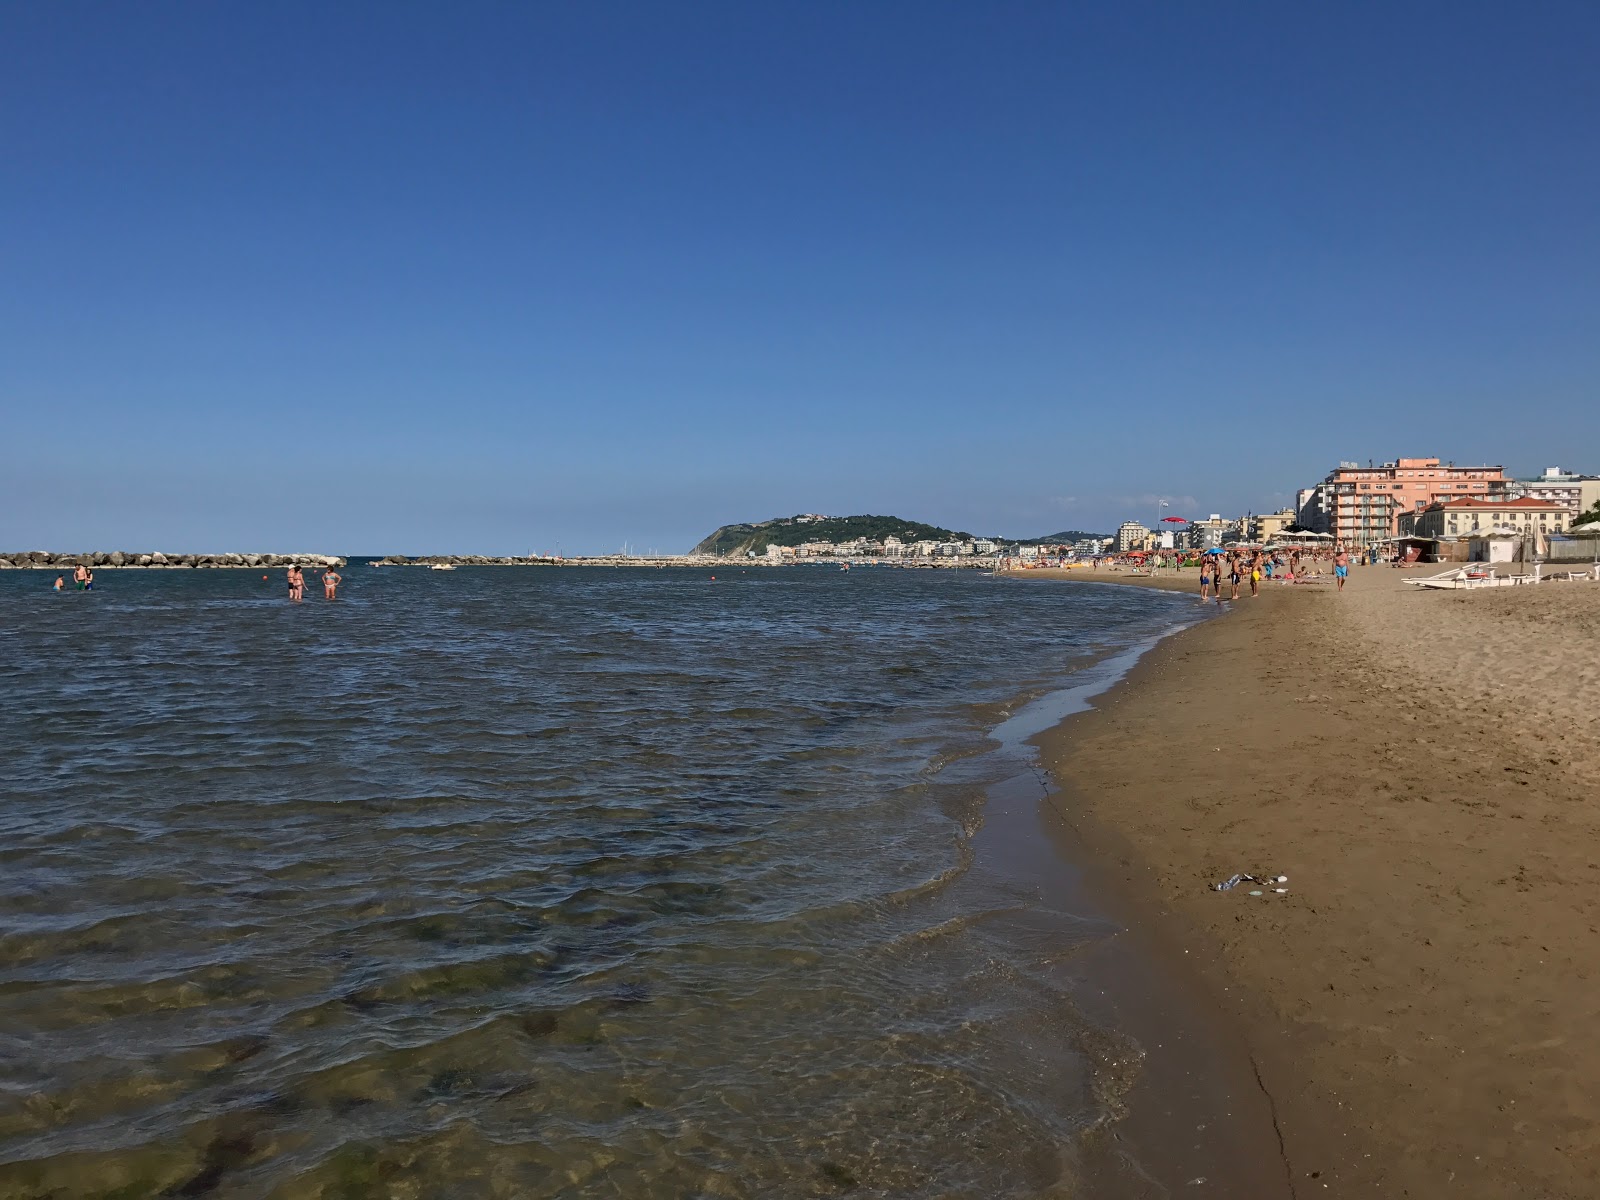 Spiaggia di Cattolica II'in fotoğrafı parlak kum yüzey ile